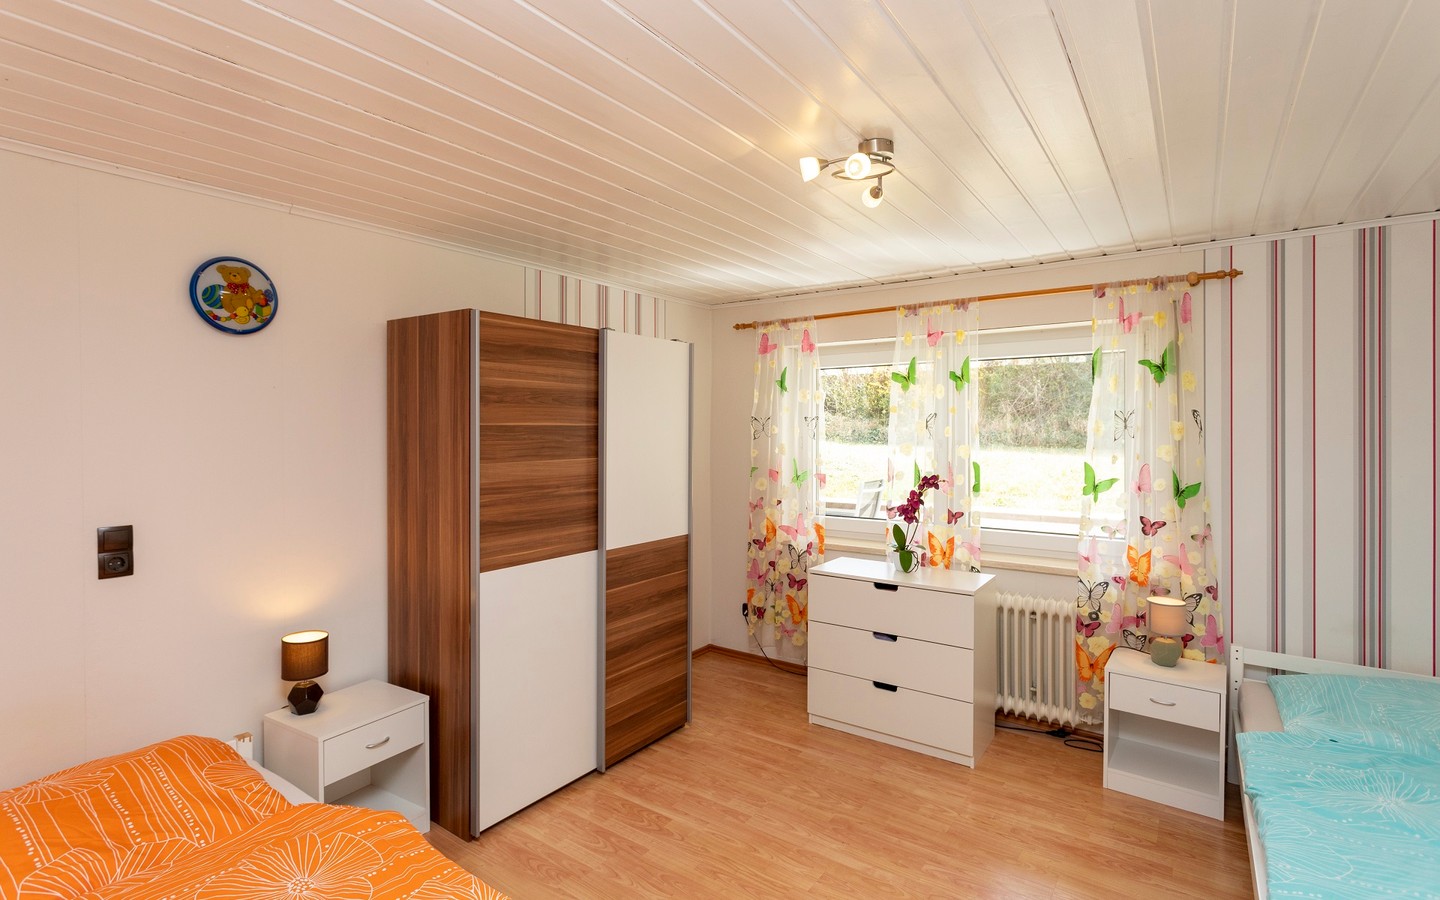 Zimmer 3 - Raum für individuelle Wohn(t)räume: Attraktives und ausbaufähiges Zweifamilienhaus in Dielheim